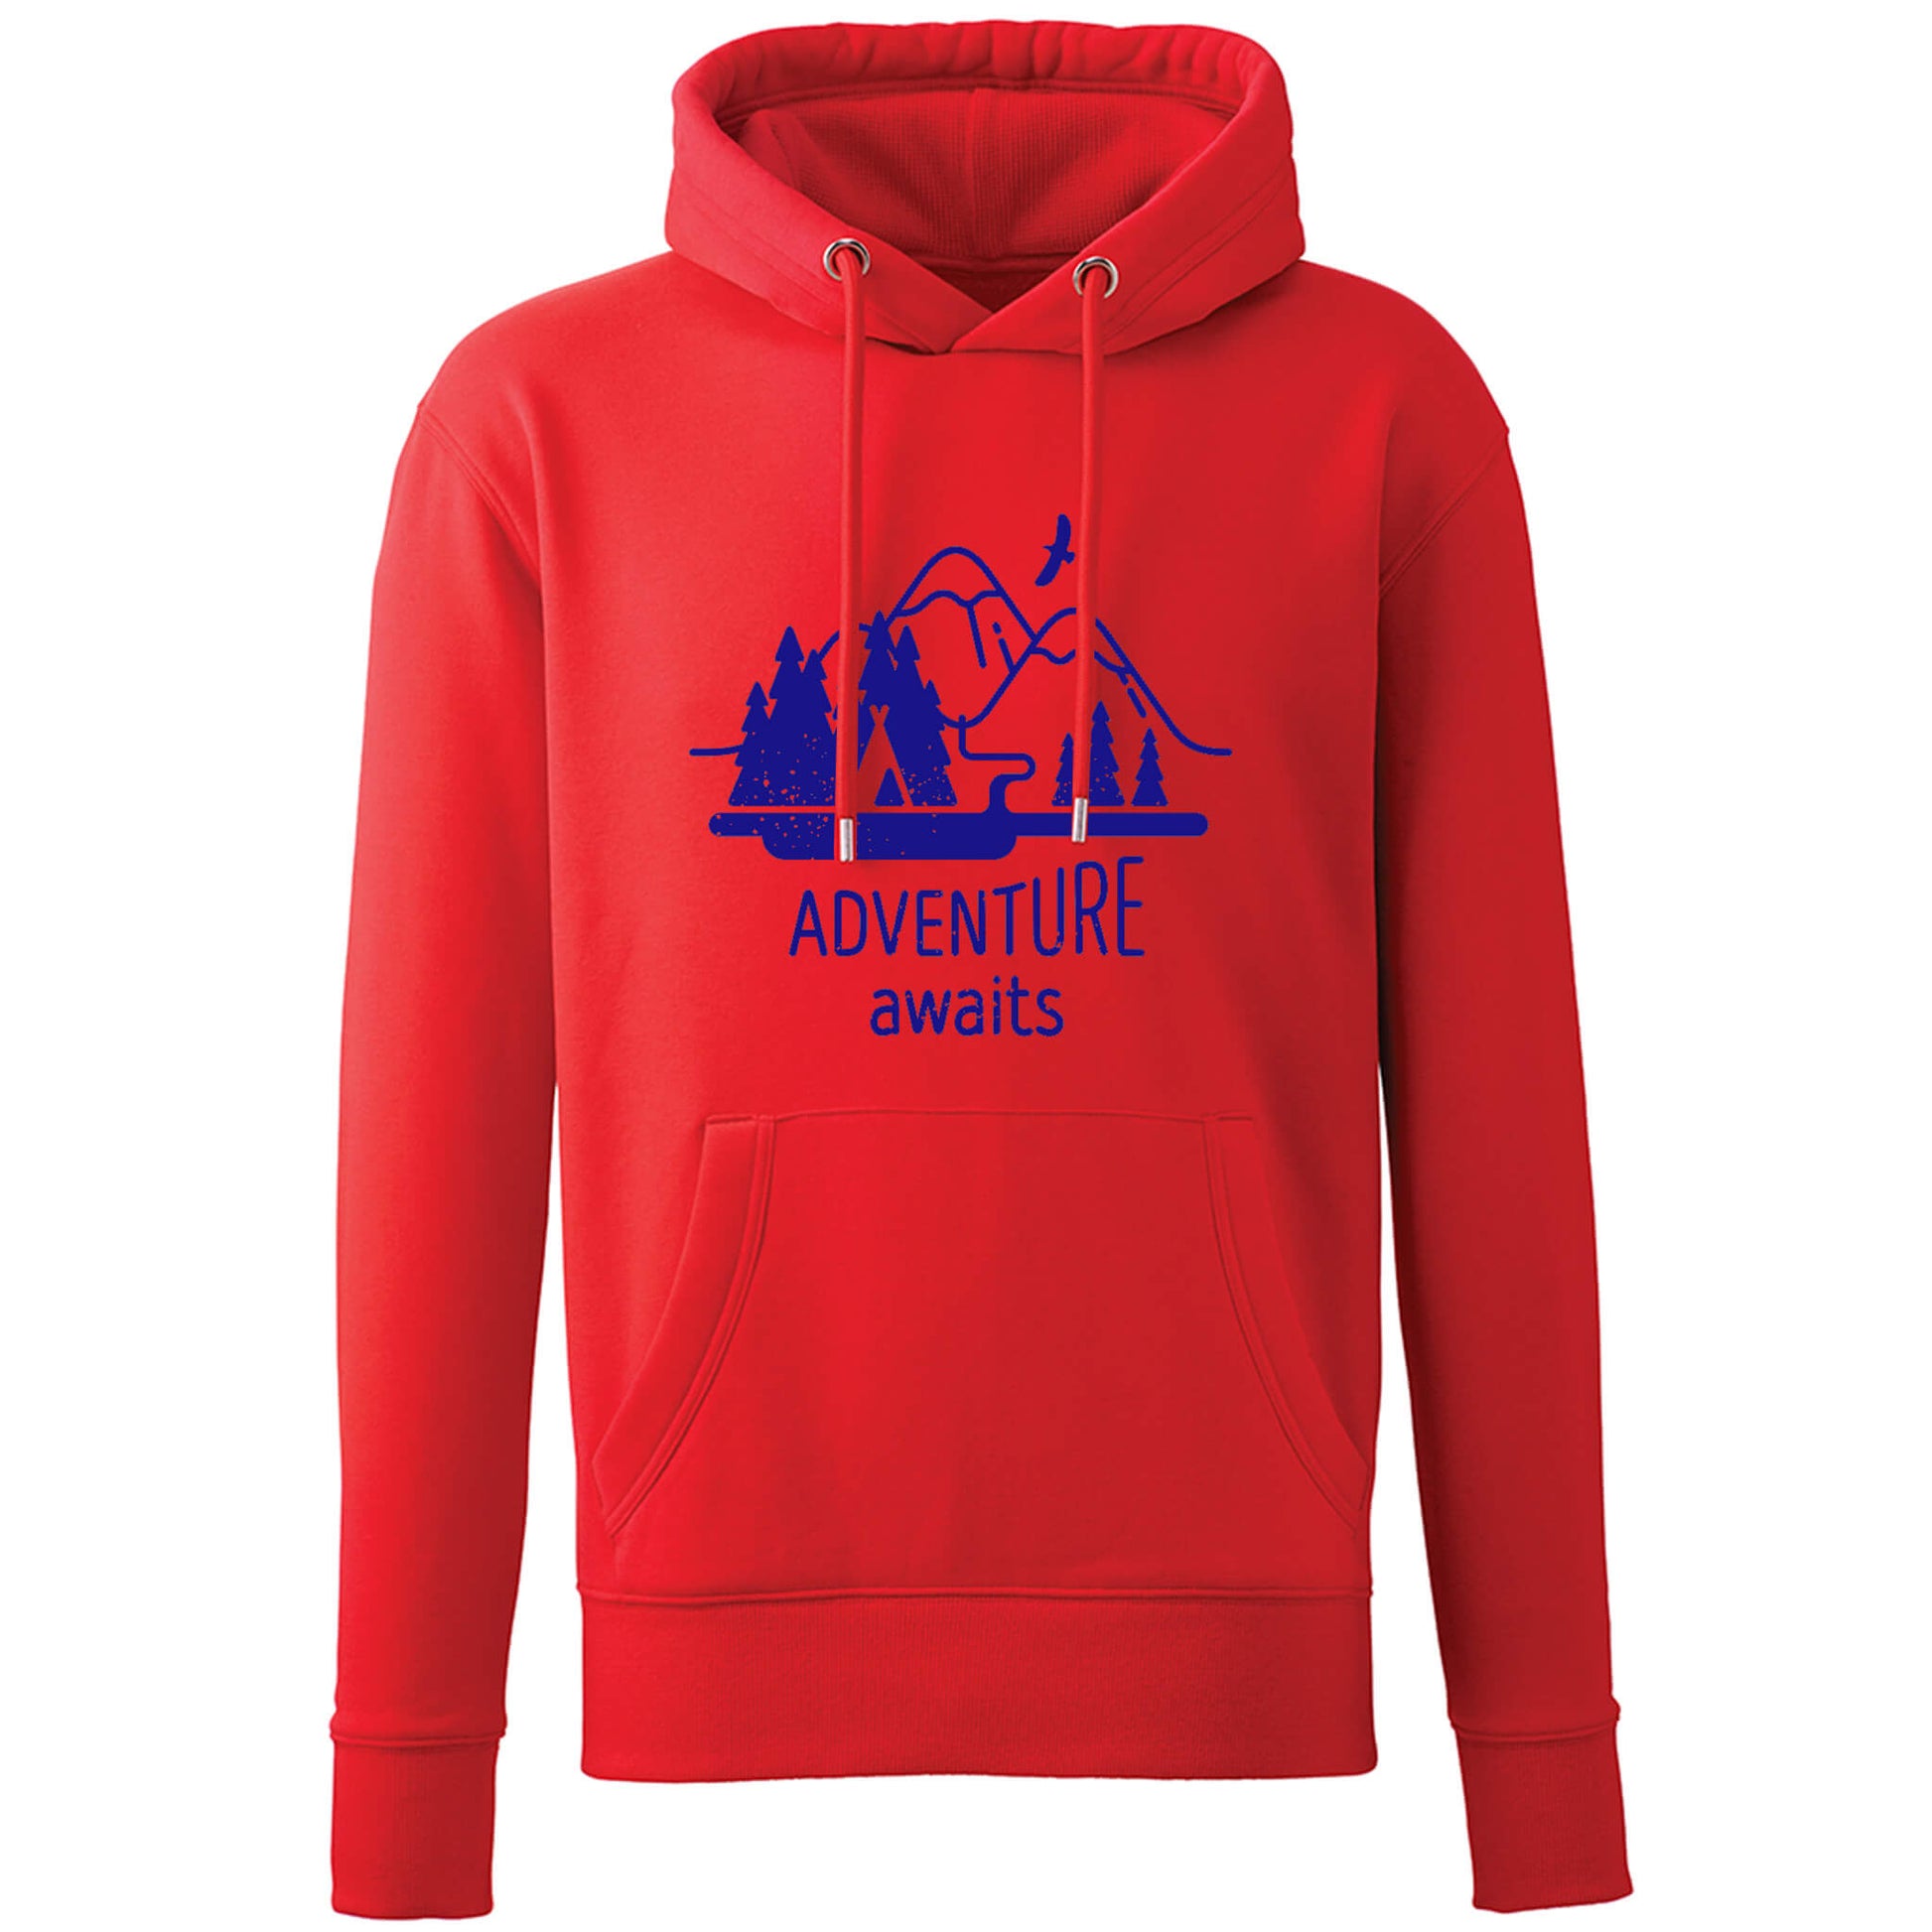 adventure awaits vegan red hoodie